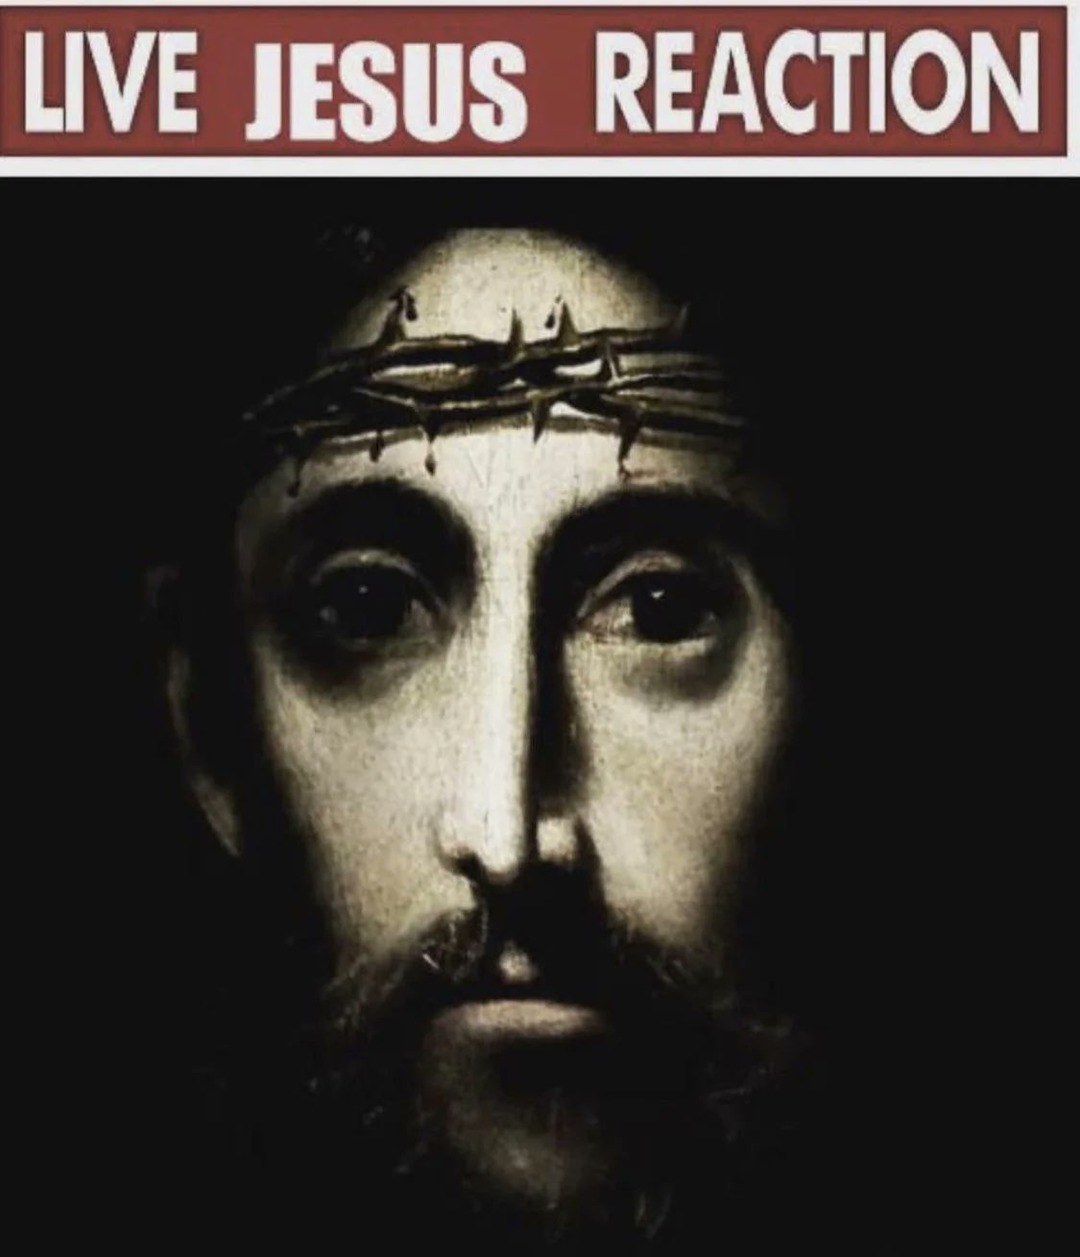 Live jesus reaction - meme